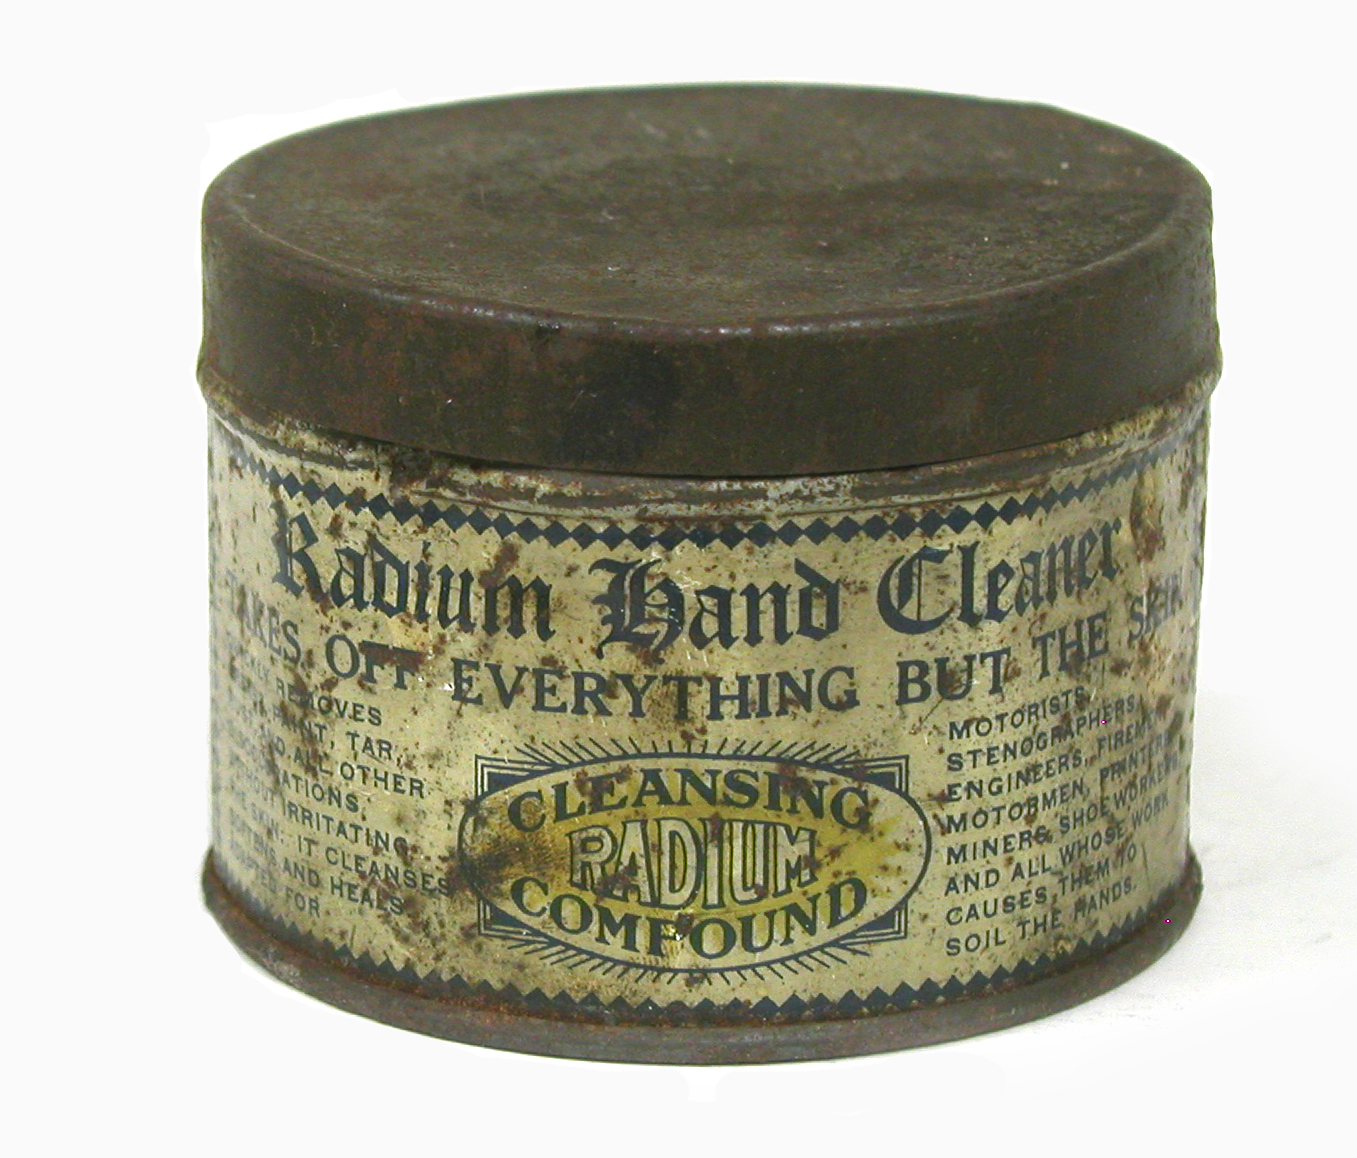 Radium Hand Cleaner (ca. 1910 to 1920)